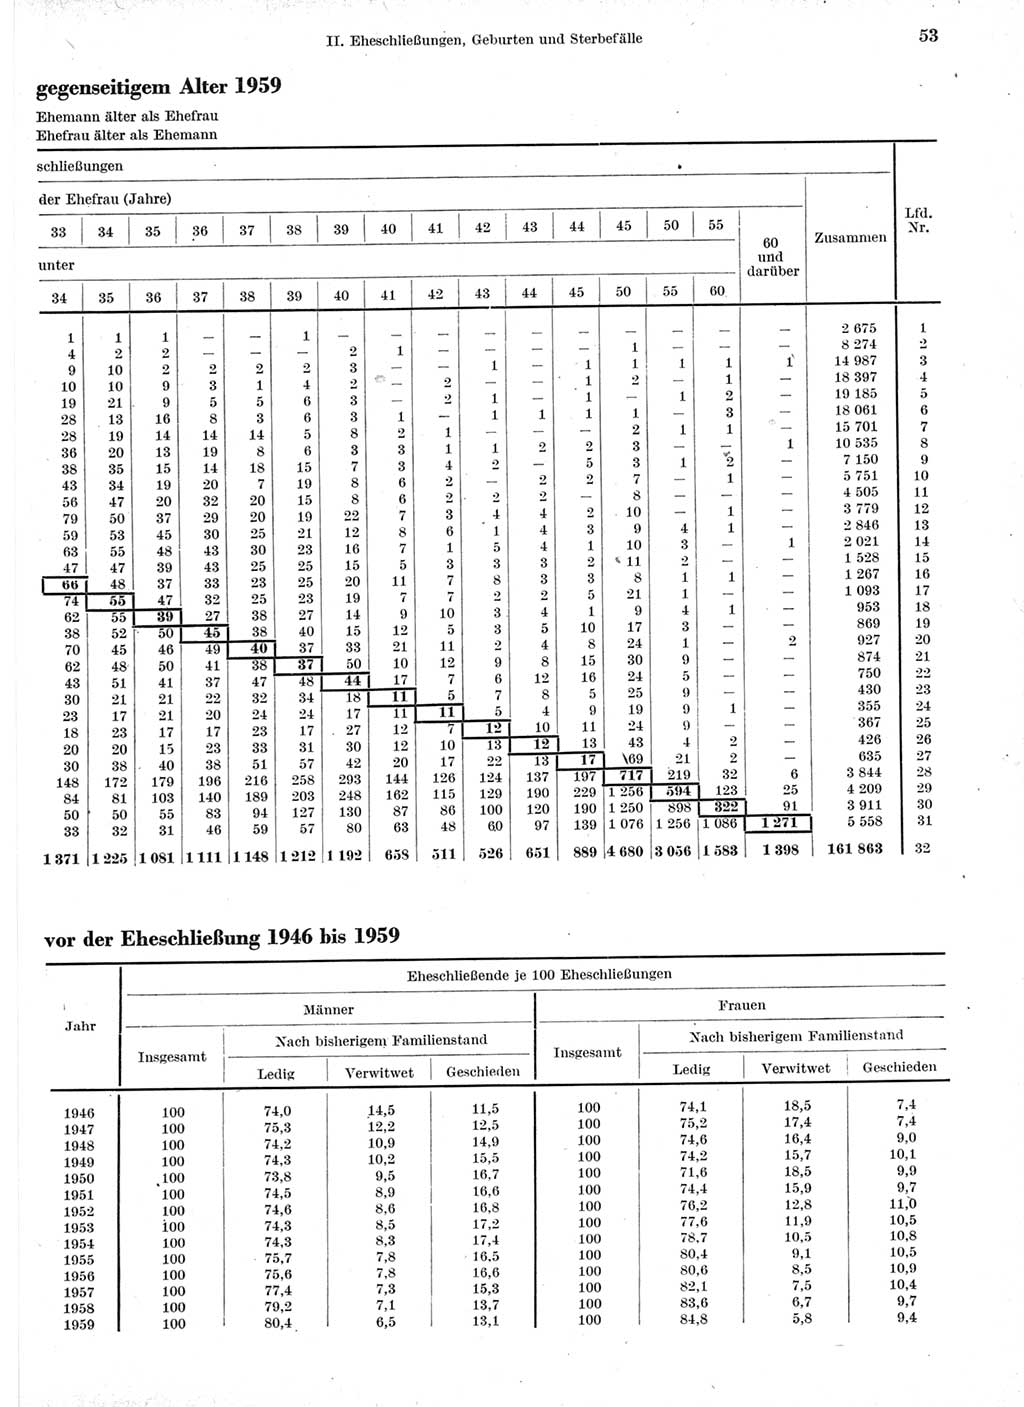 Statistisches Jahrbuch der Deutschen Demokratischen Republik (DDR) 1960-1961, Seite 53 (Stat. Jb. DDR 1960-1961, S. 53)